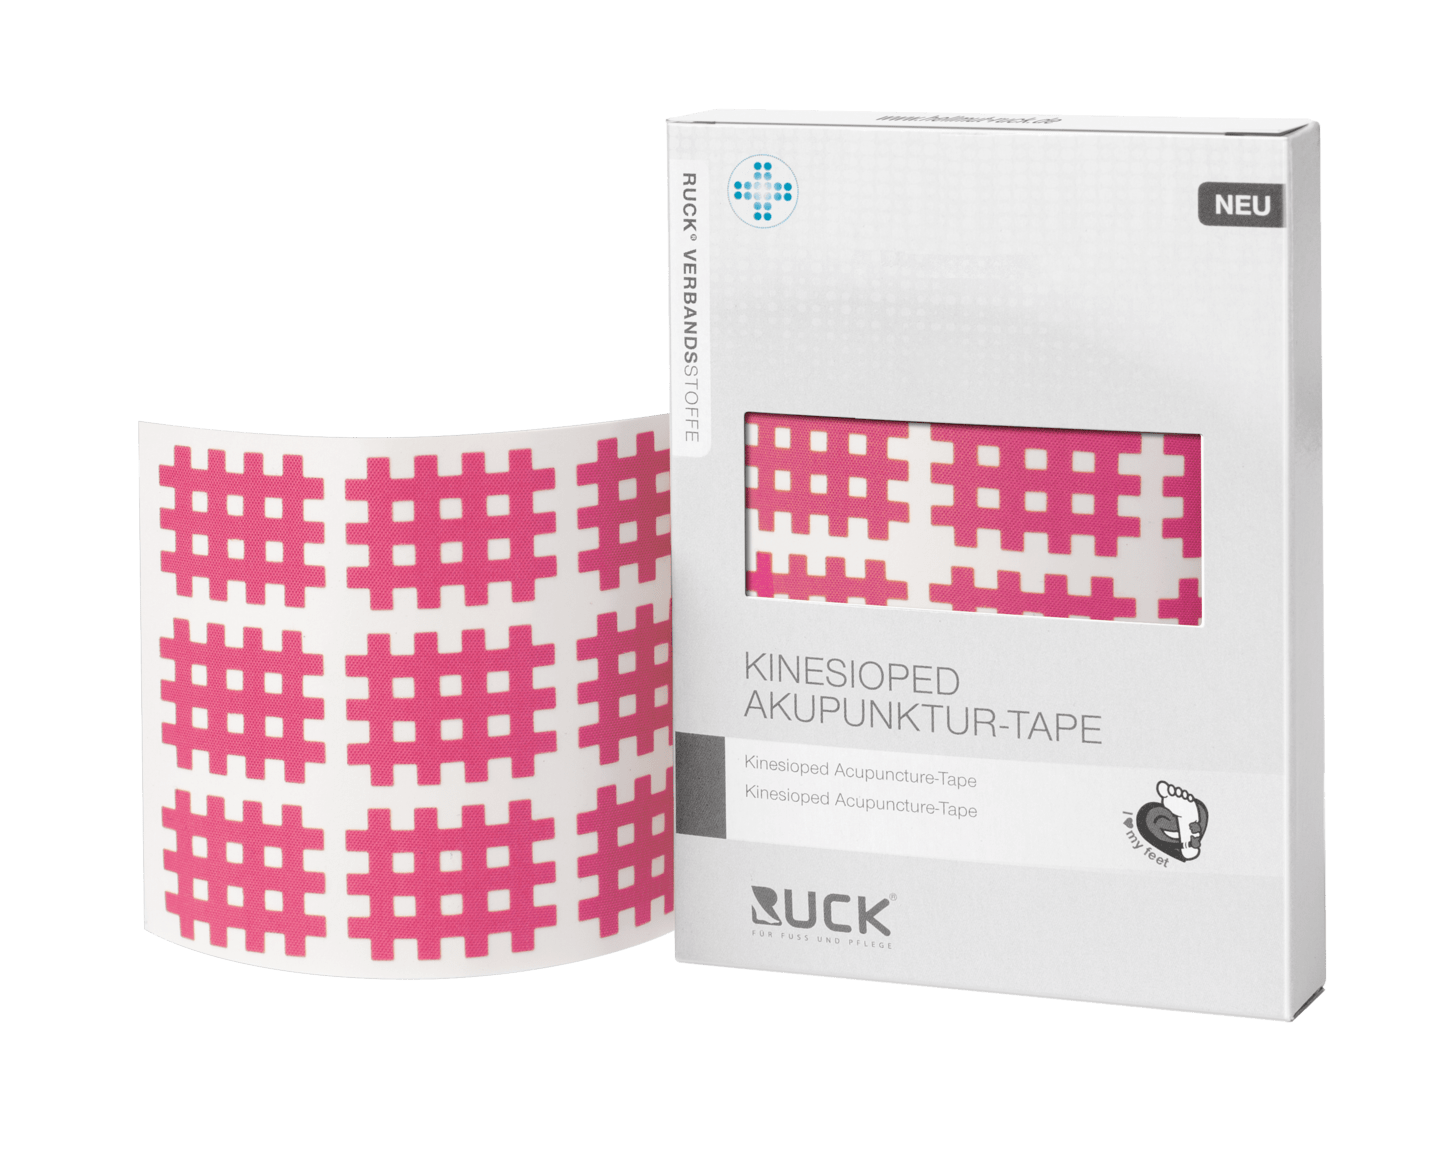 RUCK VERBANDSSTOFFE - Kinesioped Akupunktur-Tape in pink